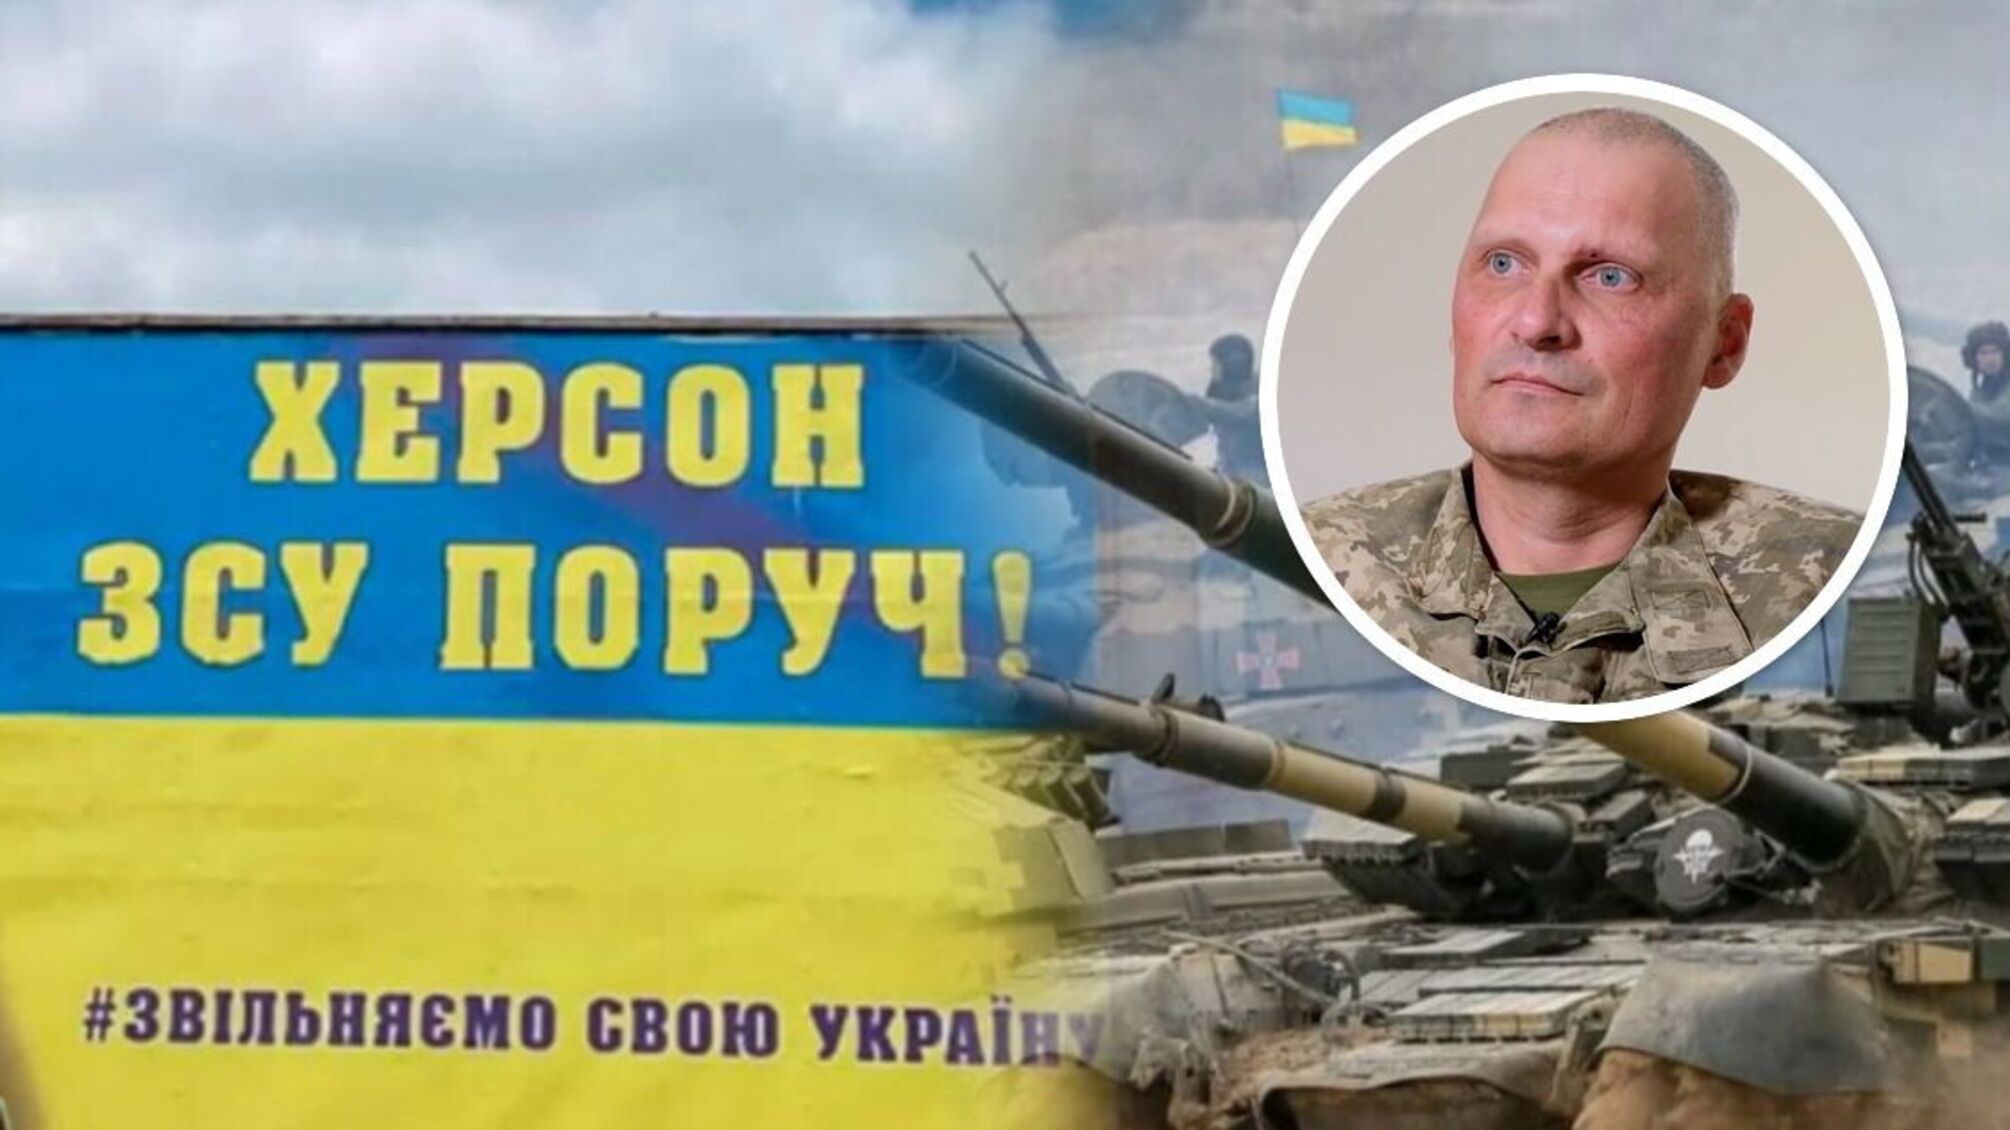 Оккупанты преобладают в танках, но сломаны морально, – стопкоровец Новосельцев о новостях с запорожского 'передка'